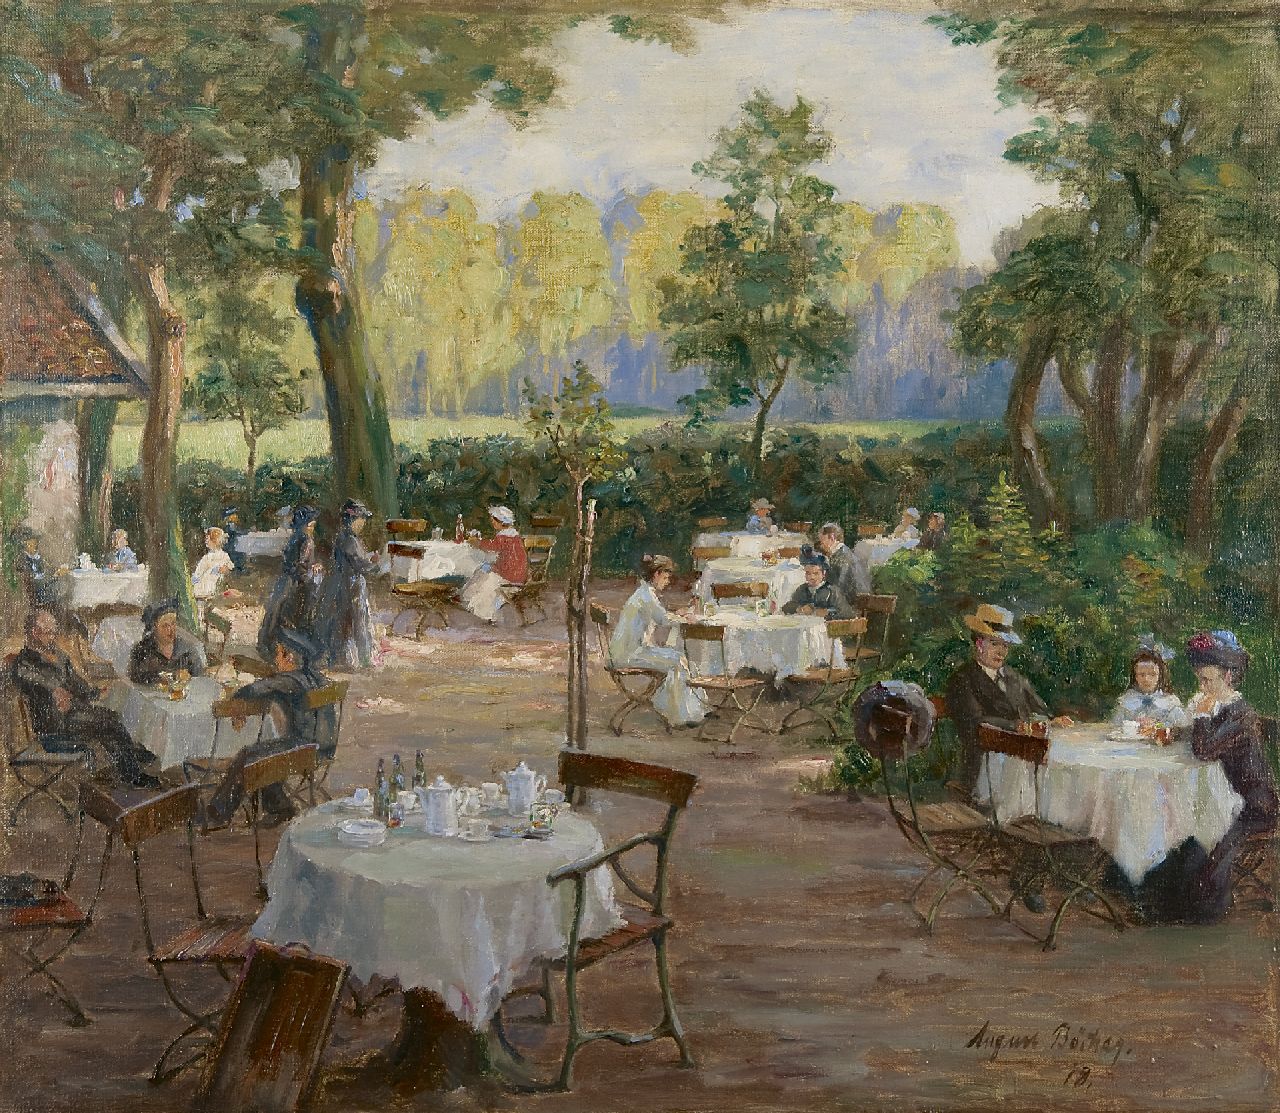 Böcher A.  | August Böcher, Afternoon in a garden café, Öl auf Leinwand 73,9 x 84,2 cm, signed l.r. und dated '18